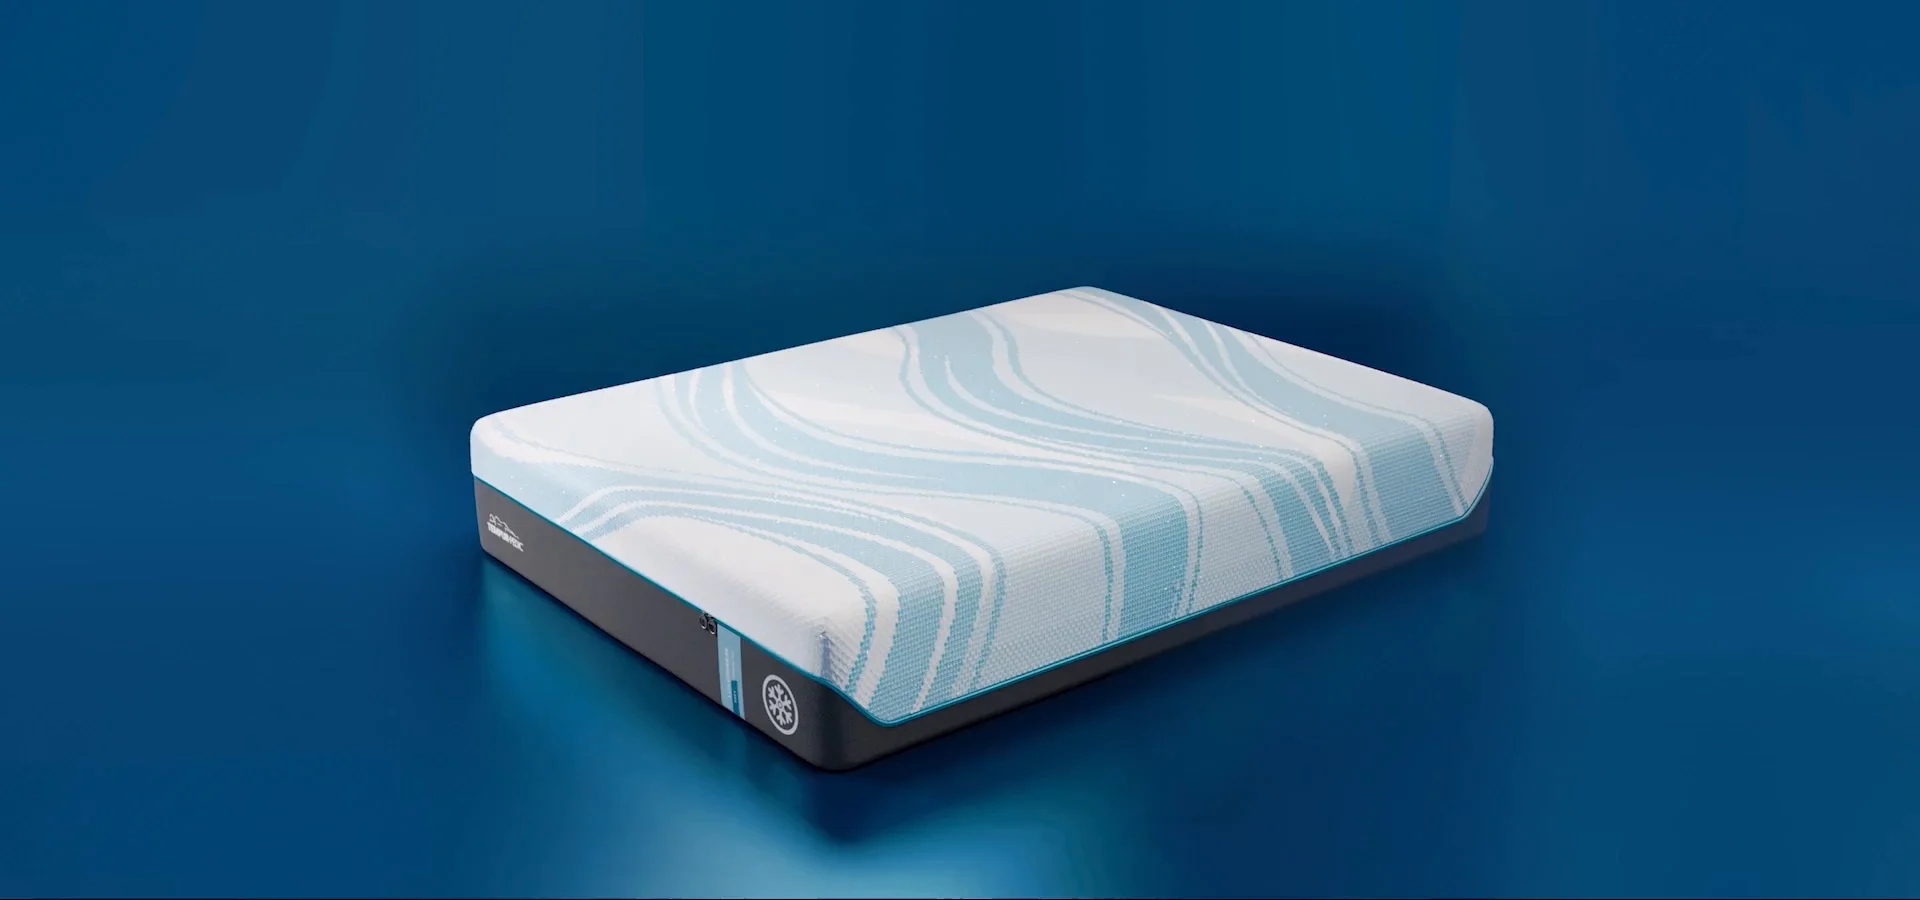 TEMPUR-Pro Breeze 5° Cooler – Bed Pros Mattress